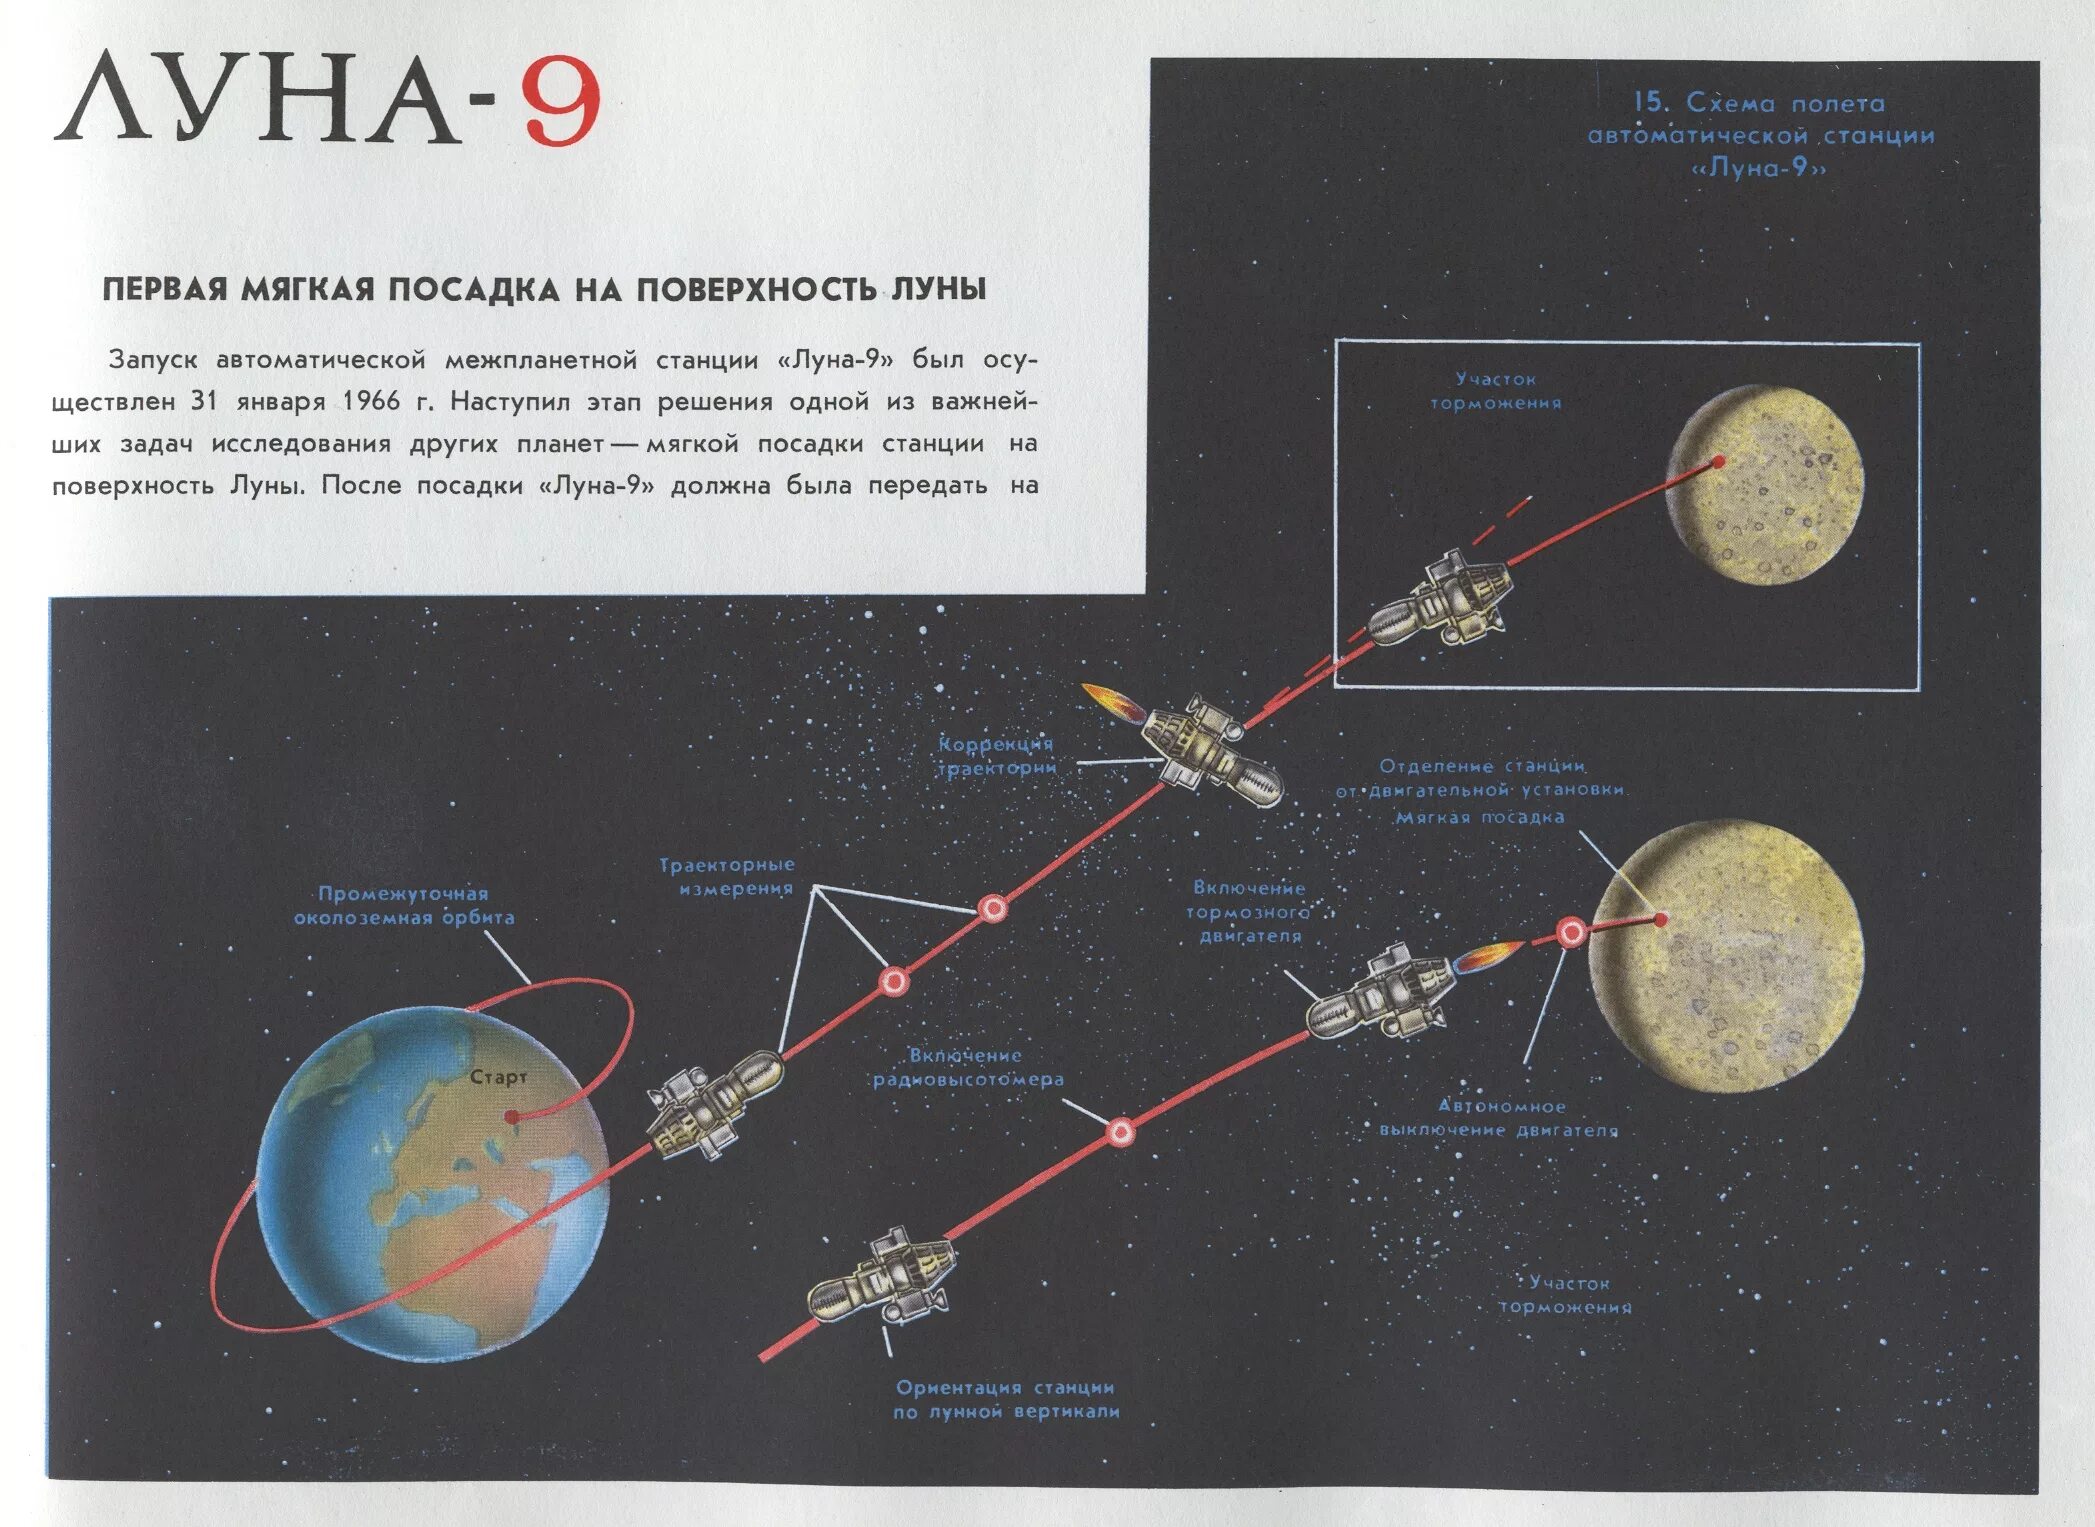 Какой аппарат совершил мягкую посадку на луну. Станция Луна 9 мягкая посадка на луну. Луна-9 схема посадки. Луна-9 автоматическая межпланетная станция. Схема посадки лунной станции СССР.